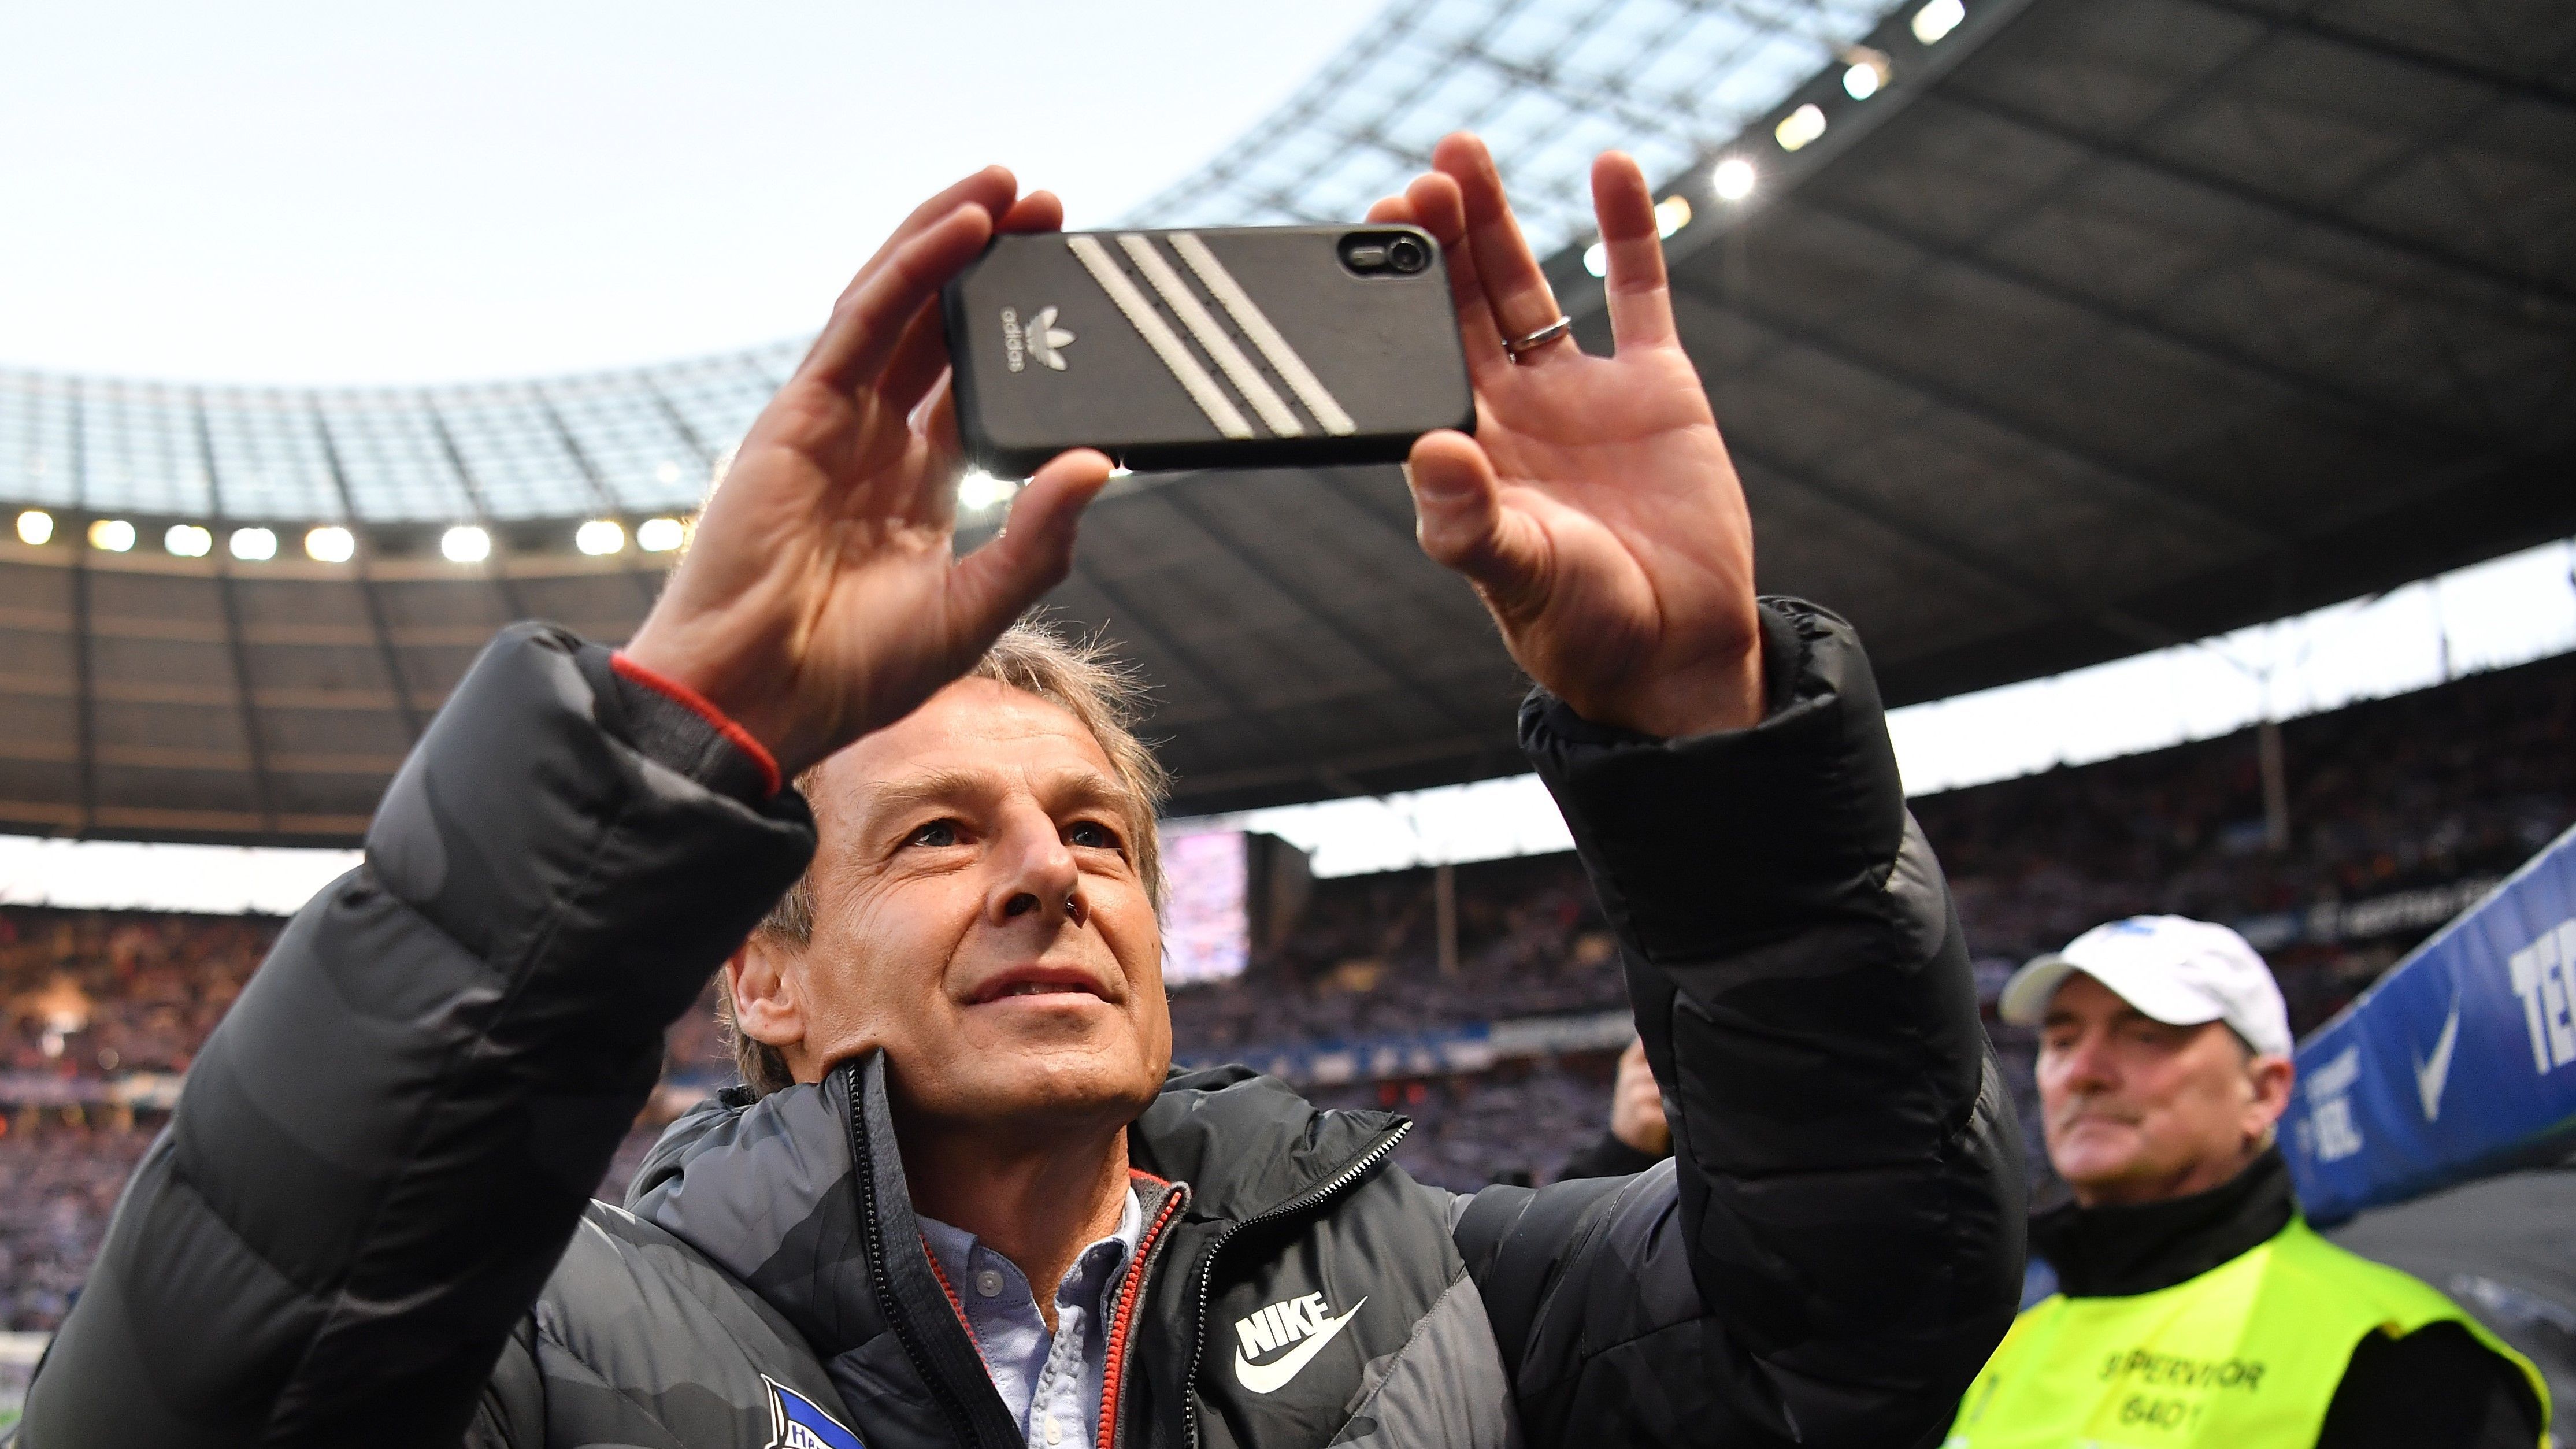 
                <strong>Jürgen Klinsmann (Trennung 11. Februar 2020)</strong><br>
                Auf der Bank der oft etwas grauen Hertha fand sich dann eine der aufregendsten Personalien der Bundesliga wieder: Jürgen Klinsmann. Der Bäckersohn aus Stuttgart war als Aufsichtsrat nach Berlin gekommen und Vertrauter des neuen Investors Lars Windhorst. Nach dem Aus von Covic übernahm er kurzerhand die Profis. Doch er hielt nur zehn Spiele durch, im Februar überrumpelte er den Verein mit seinem überraschenden Rücktritt. Interimstrainer wurde der bisherige Assistent Alexander Nouri.
              